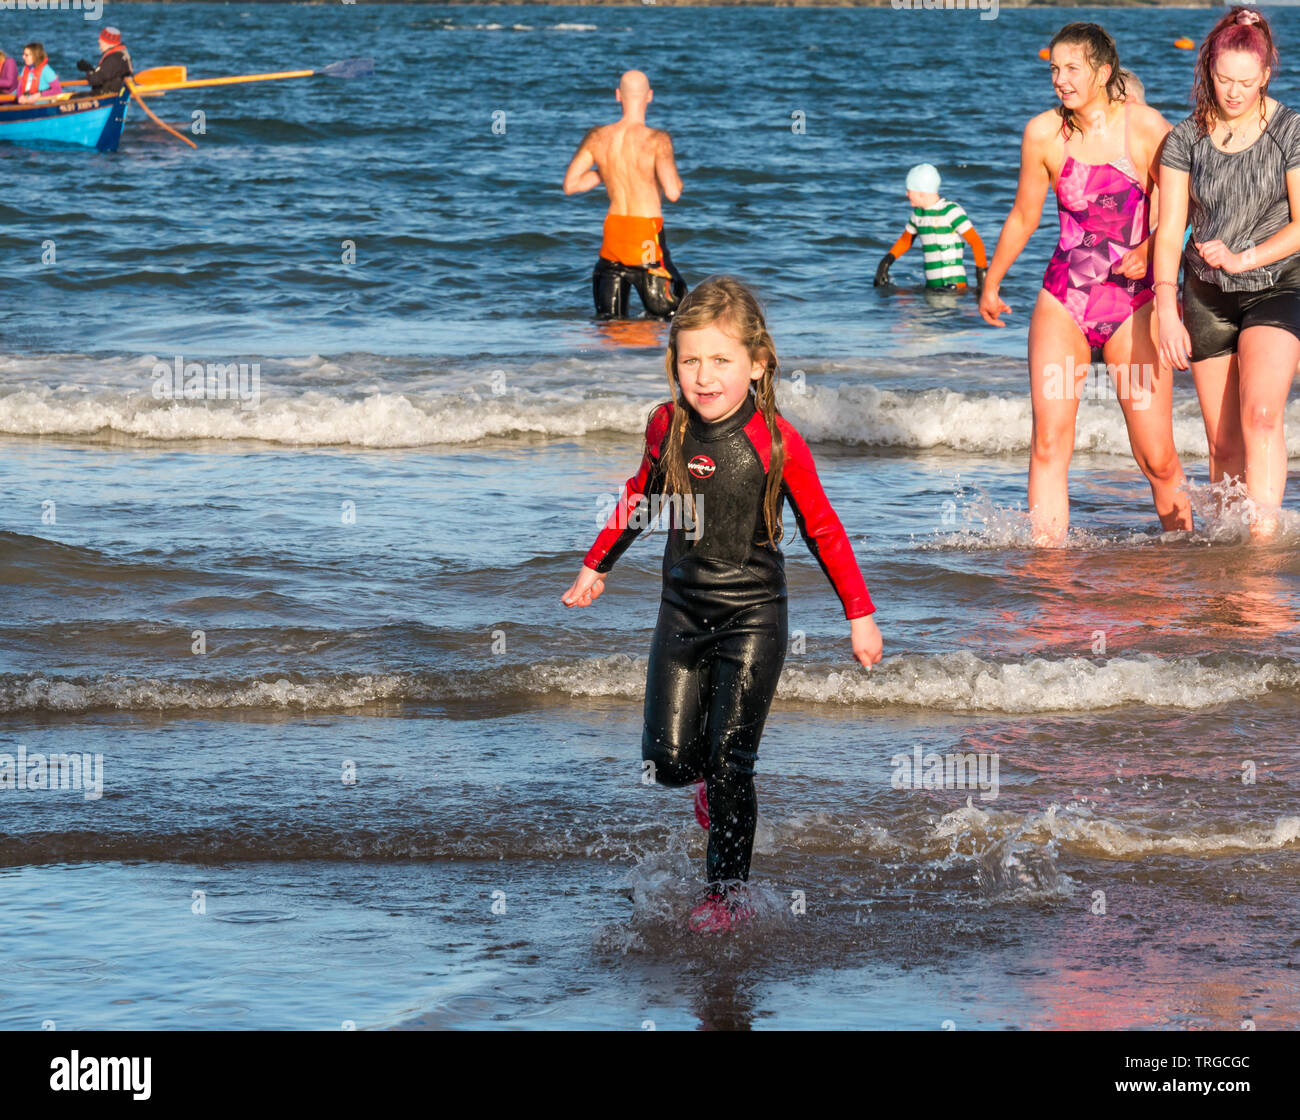 Loony Dook, le jour de l'An : Les gens braves de l'eau froide de West Bay, Firth of Forth, North Berwick, East Lothian, Scotland, UK. Jeune fille en combinaison Banque D'Images